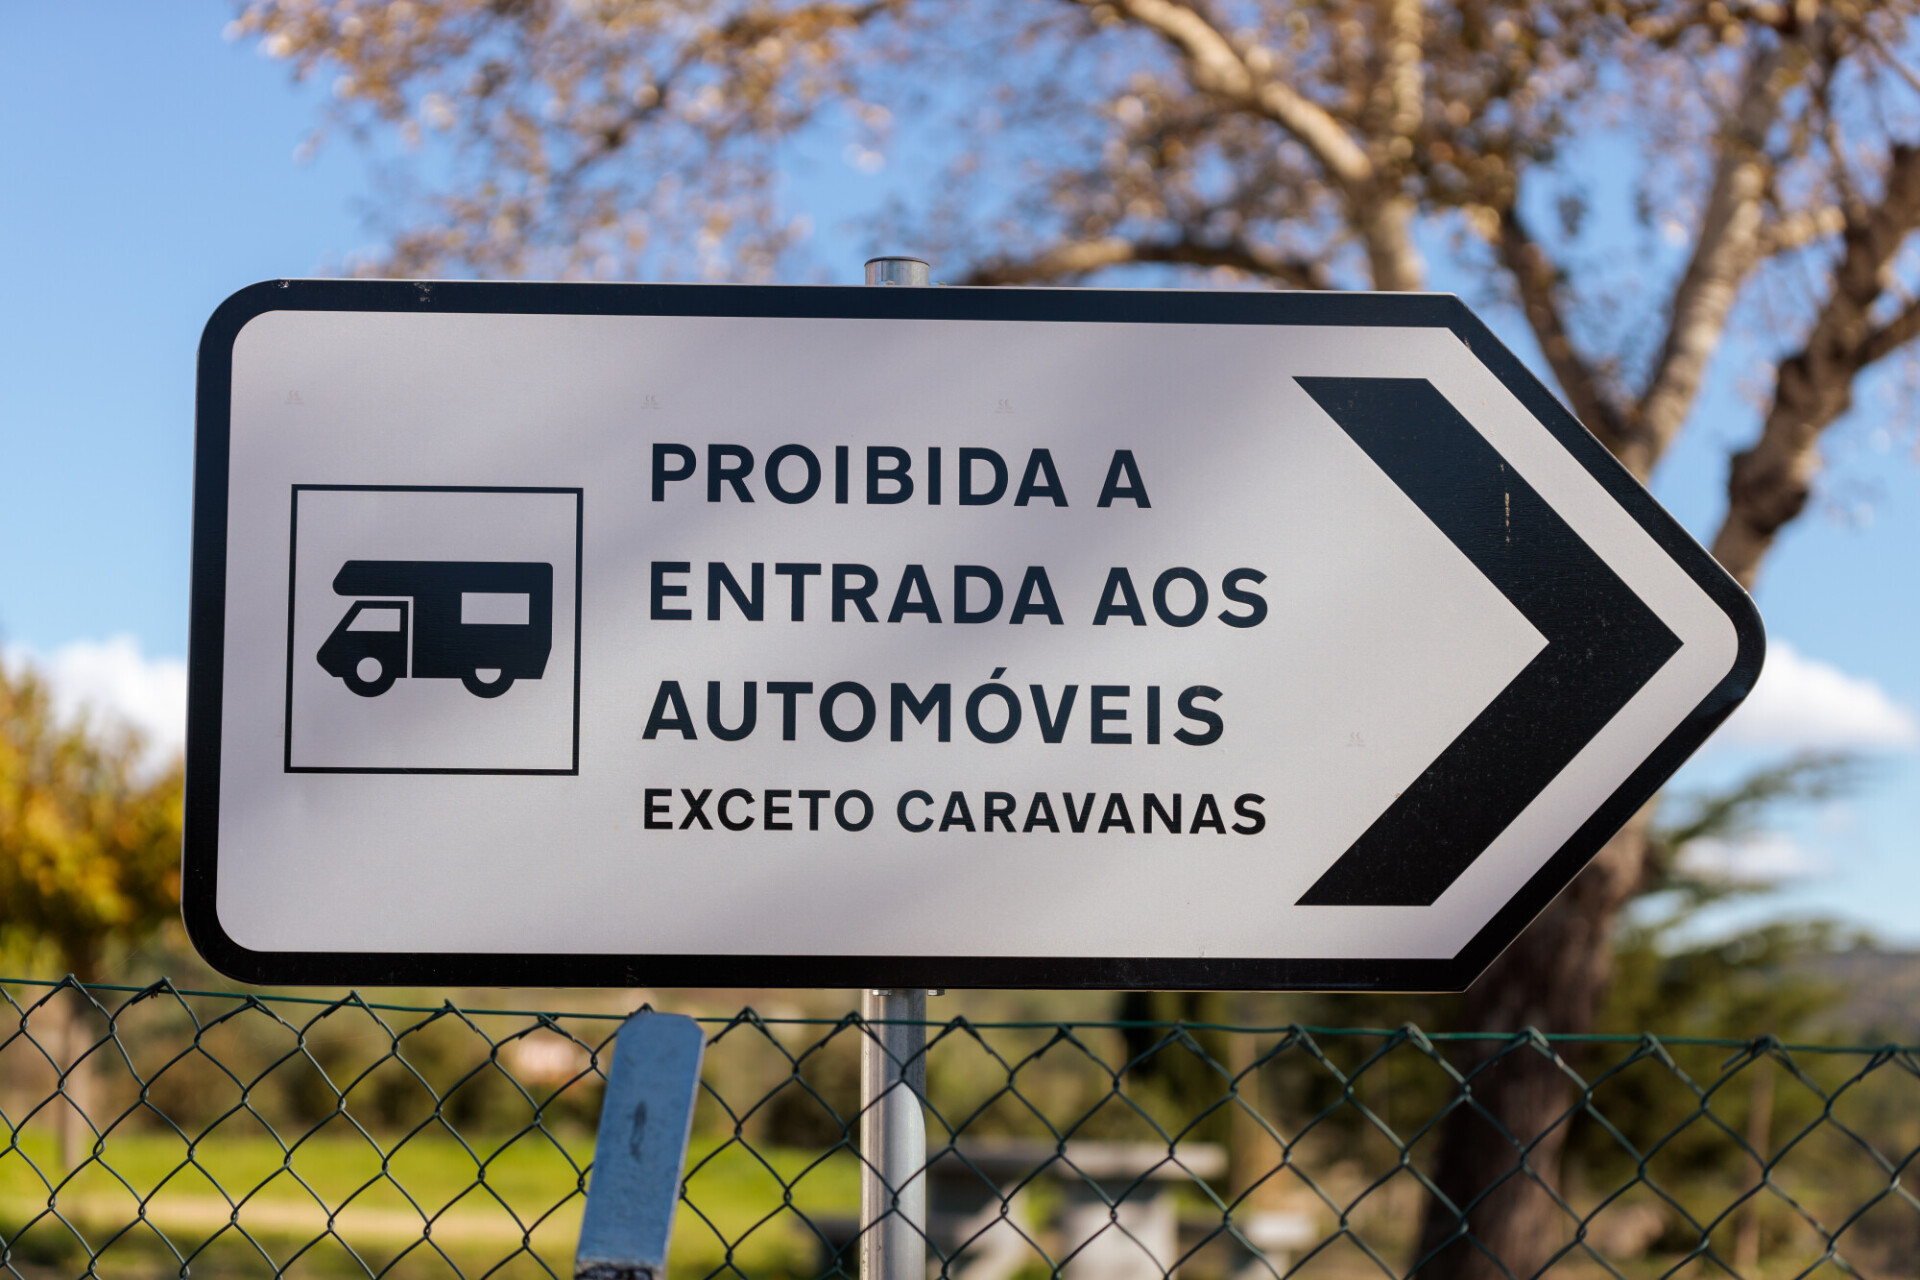 Caravan Camping Sign in Portugal